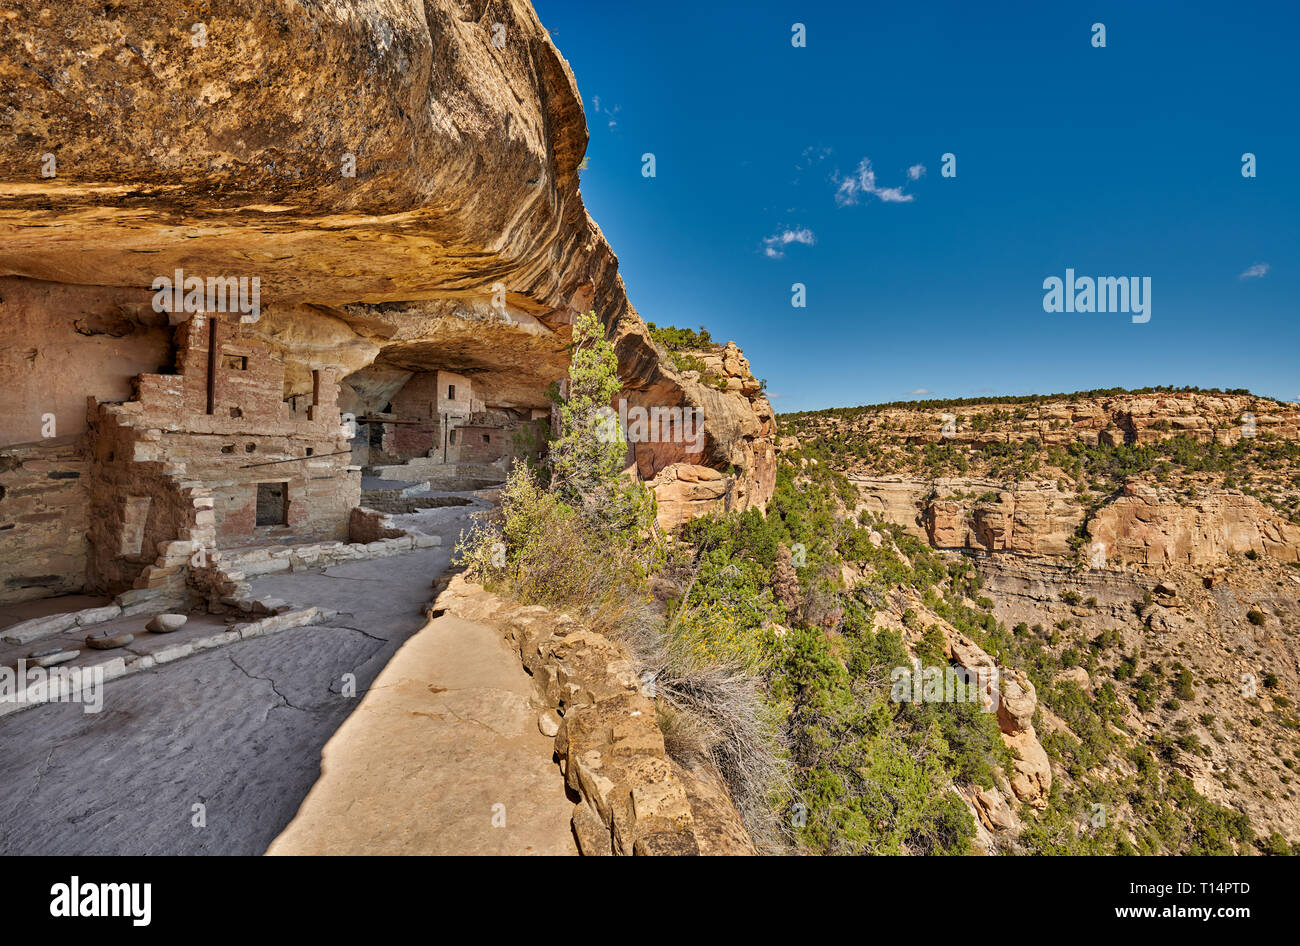 Balcone House, cliff dwellings in Mesa-Verde-Parco Nazionale, sito patrimonio mondiale dell'UNESCO, Colorado, Stati Uniti d'America, America del Nord Foto Stock